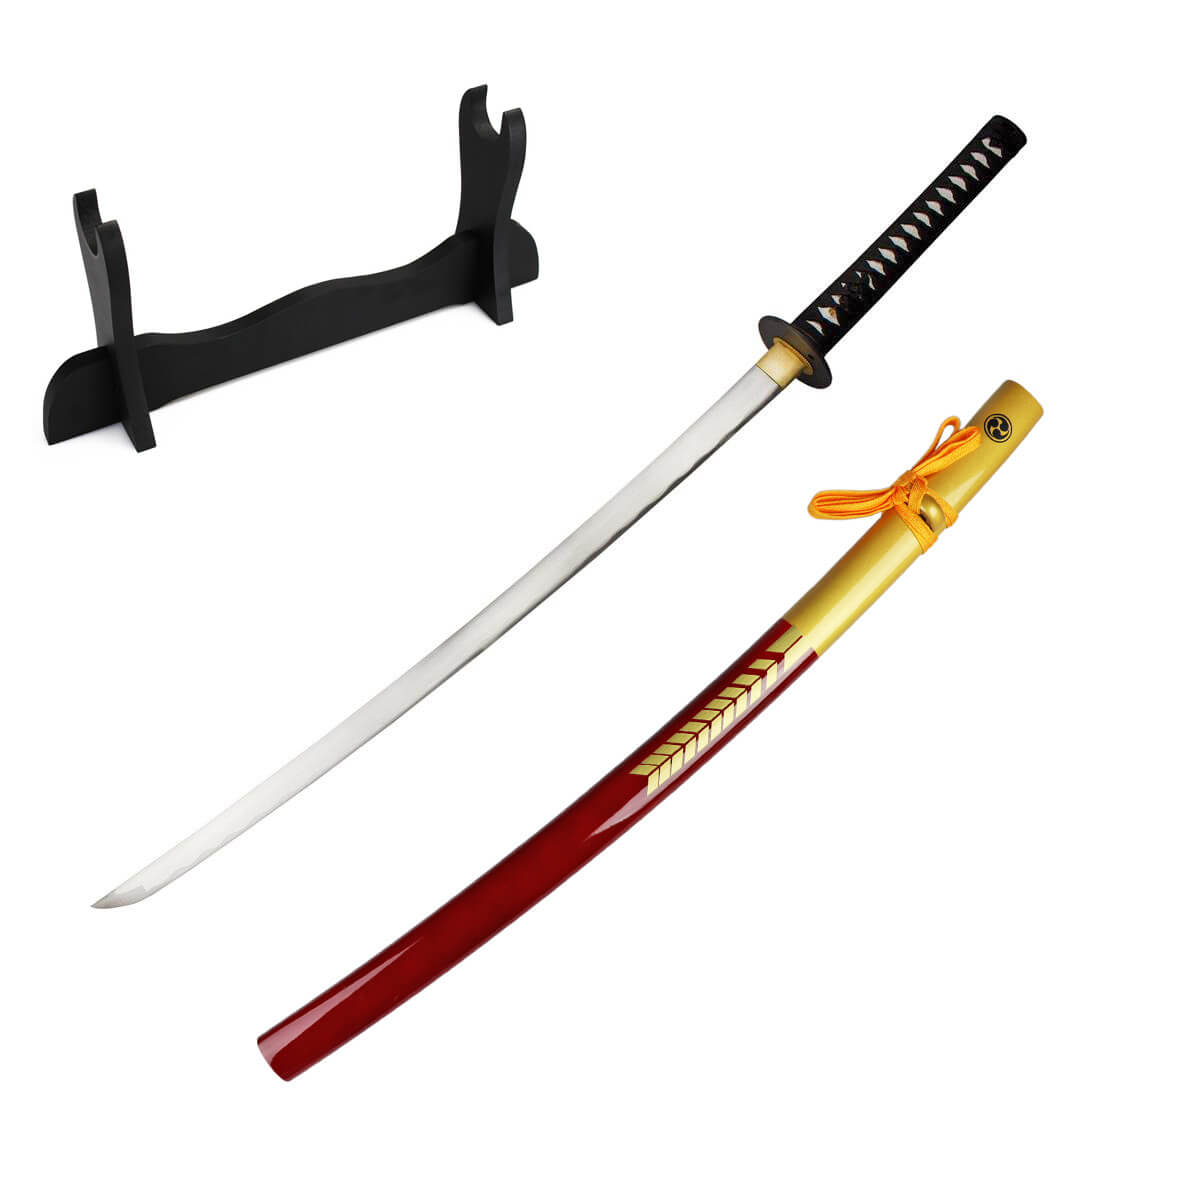 47 Ronin Katana Samuraischwert mit scharfer Klinge aus 1045 Carbonstahl inklusive Schwertständer von DerShogun